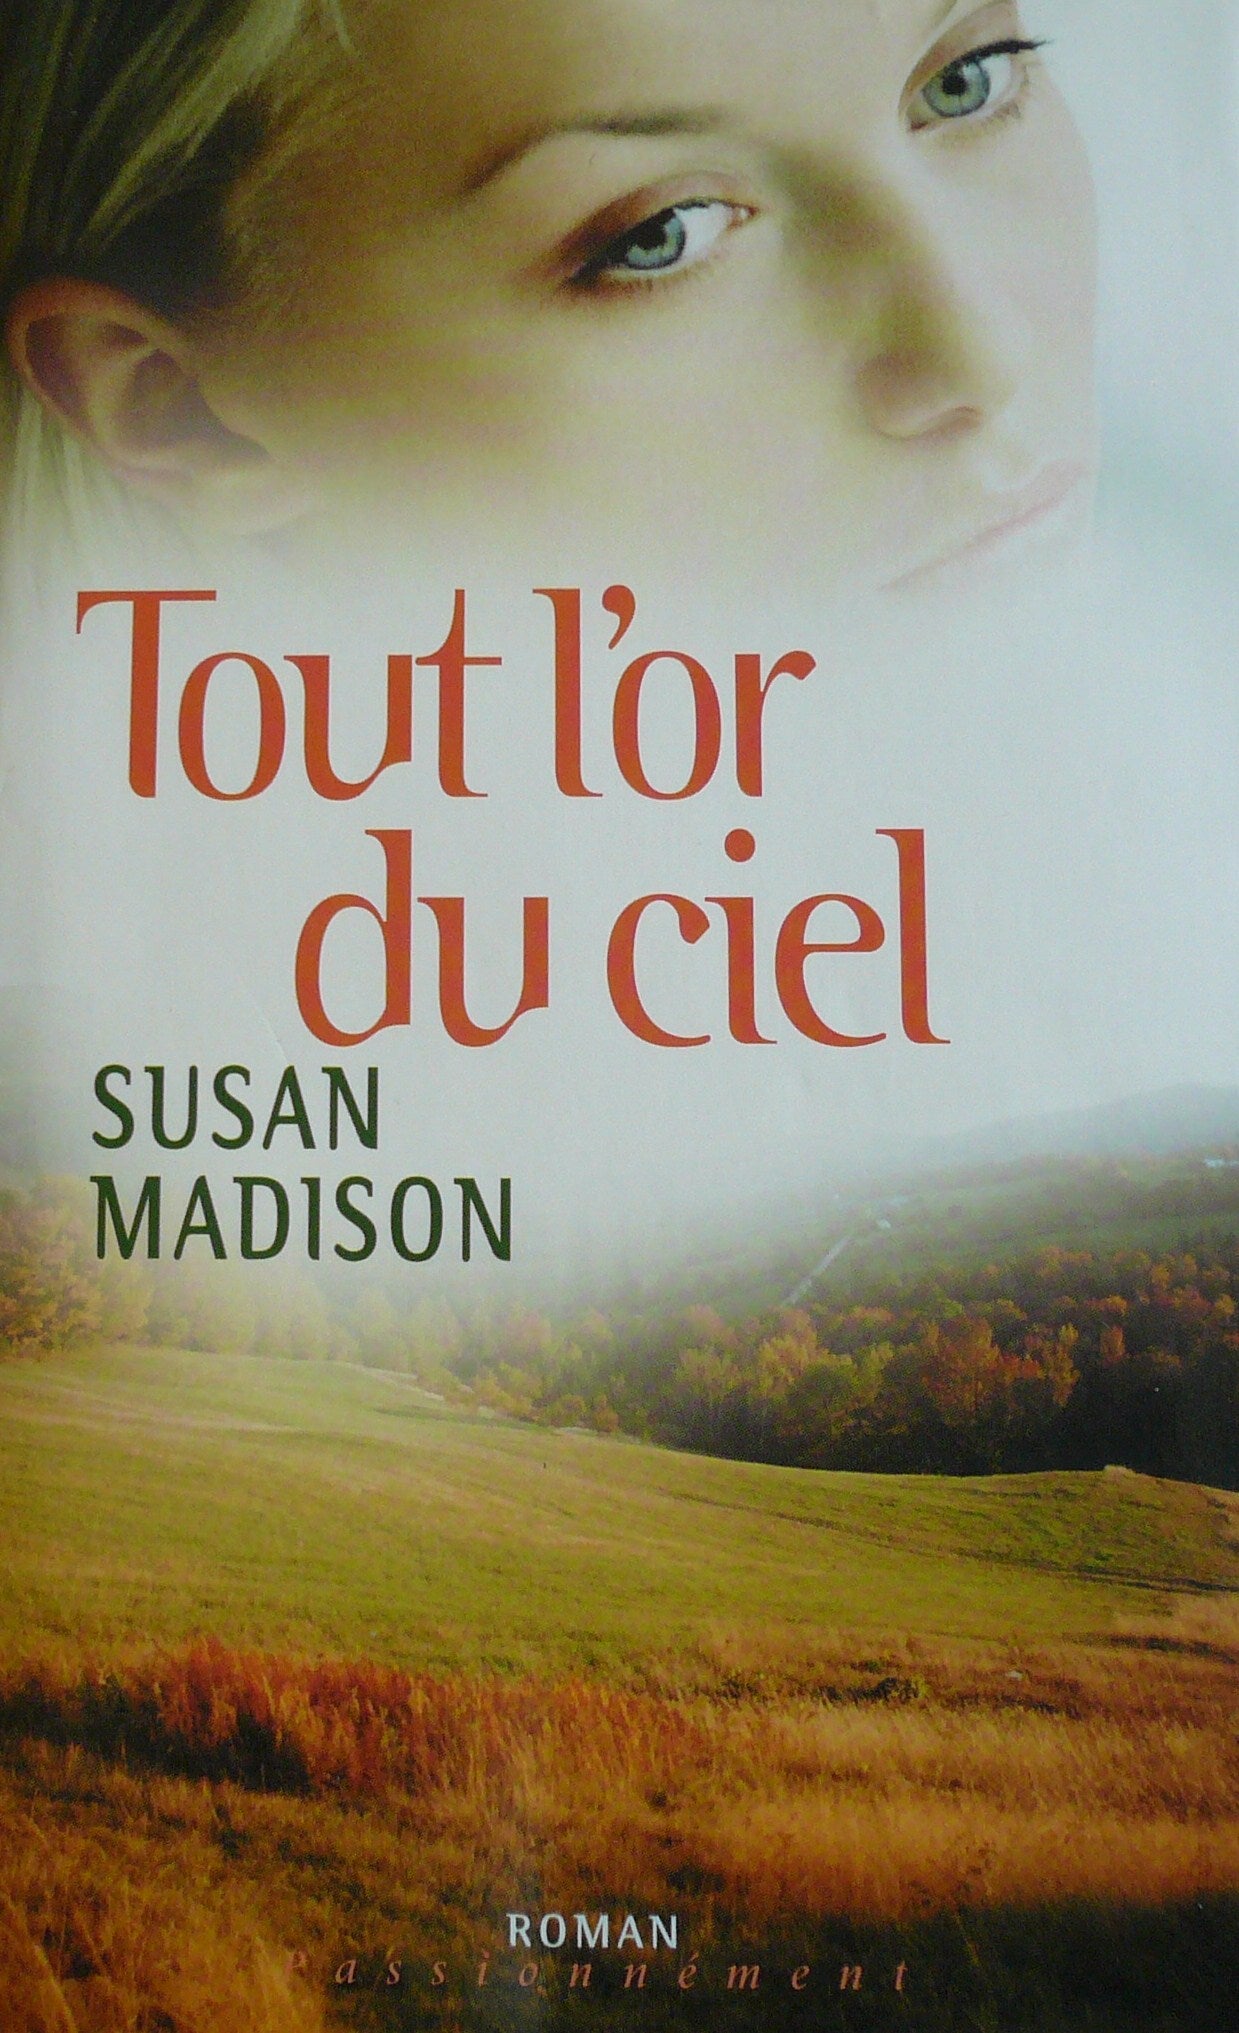 Roman Passionnément : Tout L'or du ciel - Susan Madison